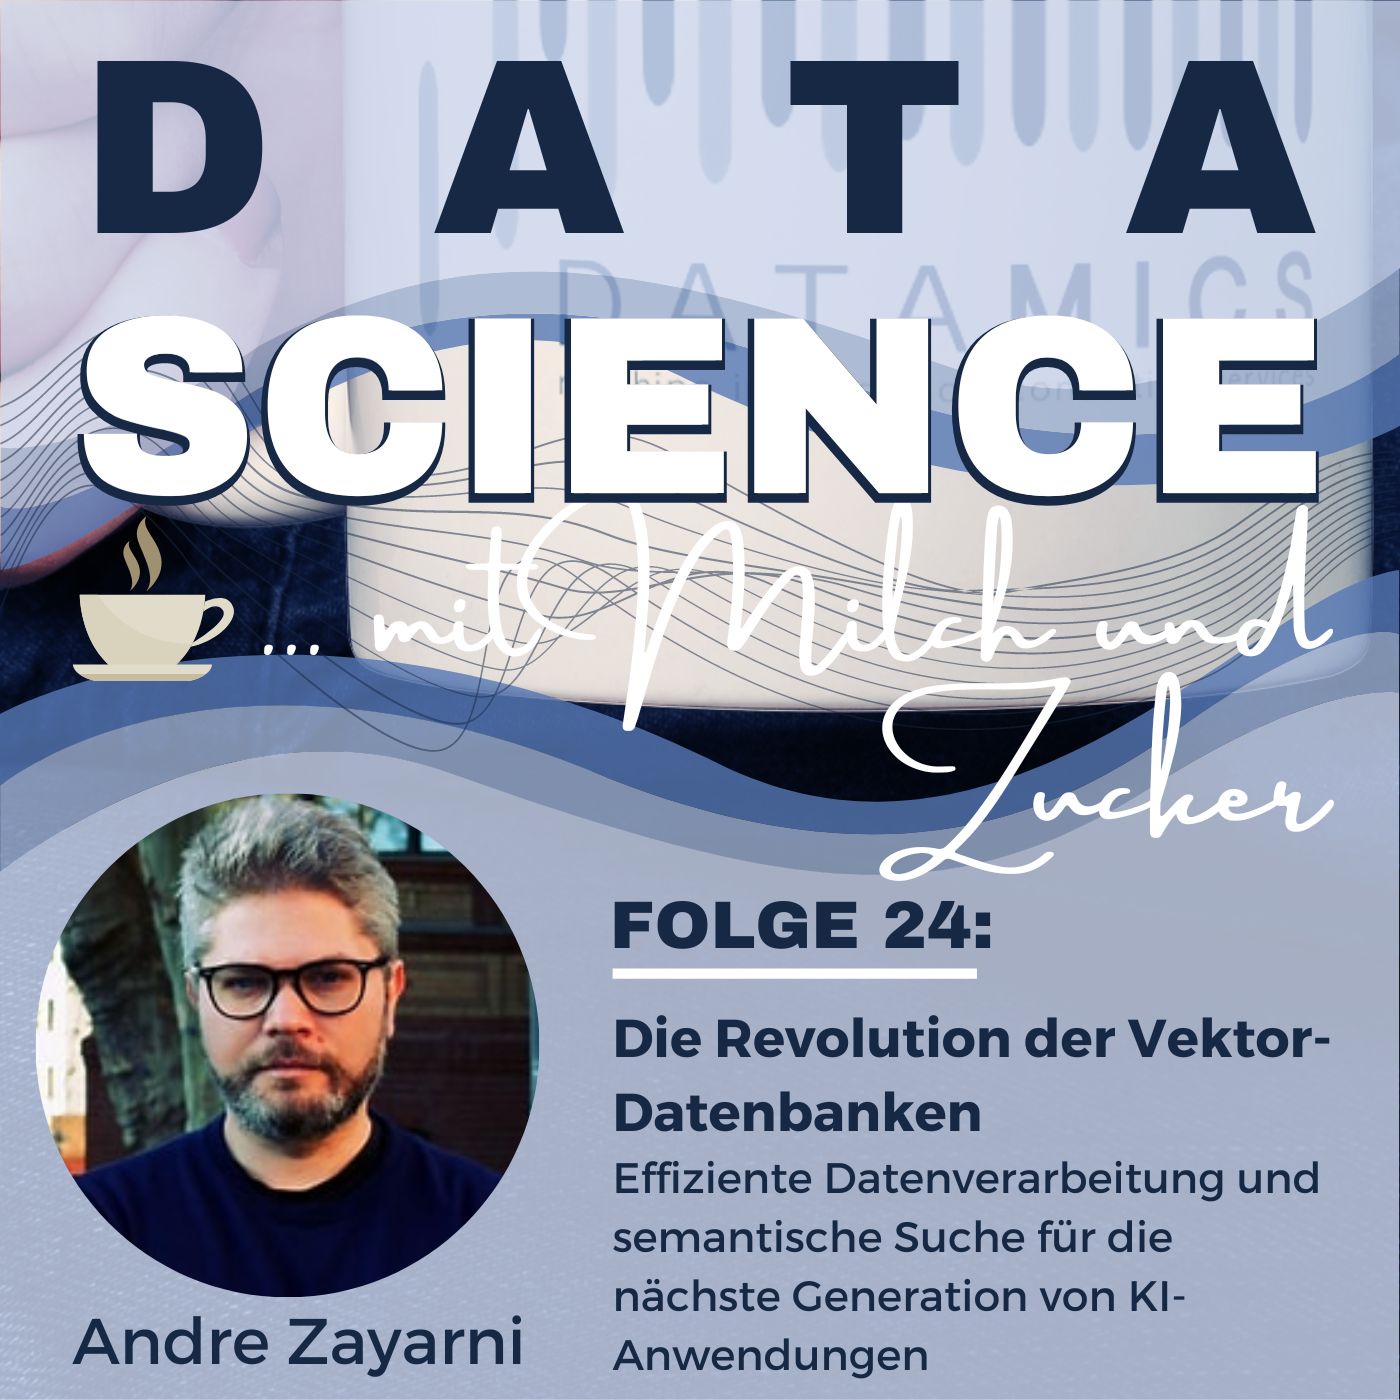 Die Revolution der Vektor-Datenbanken: Ein Gespräch mit Andre Zayarni von Qdrant